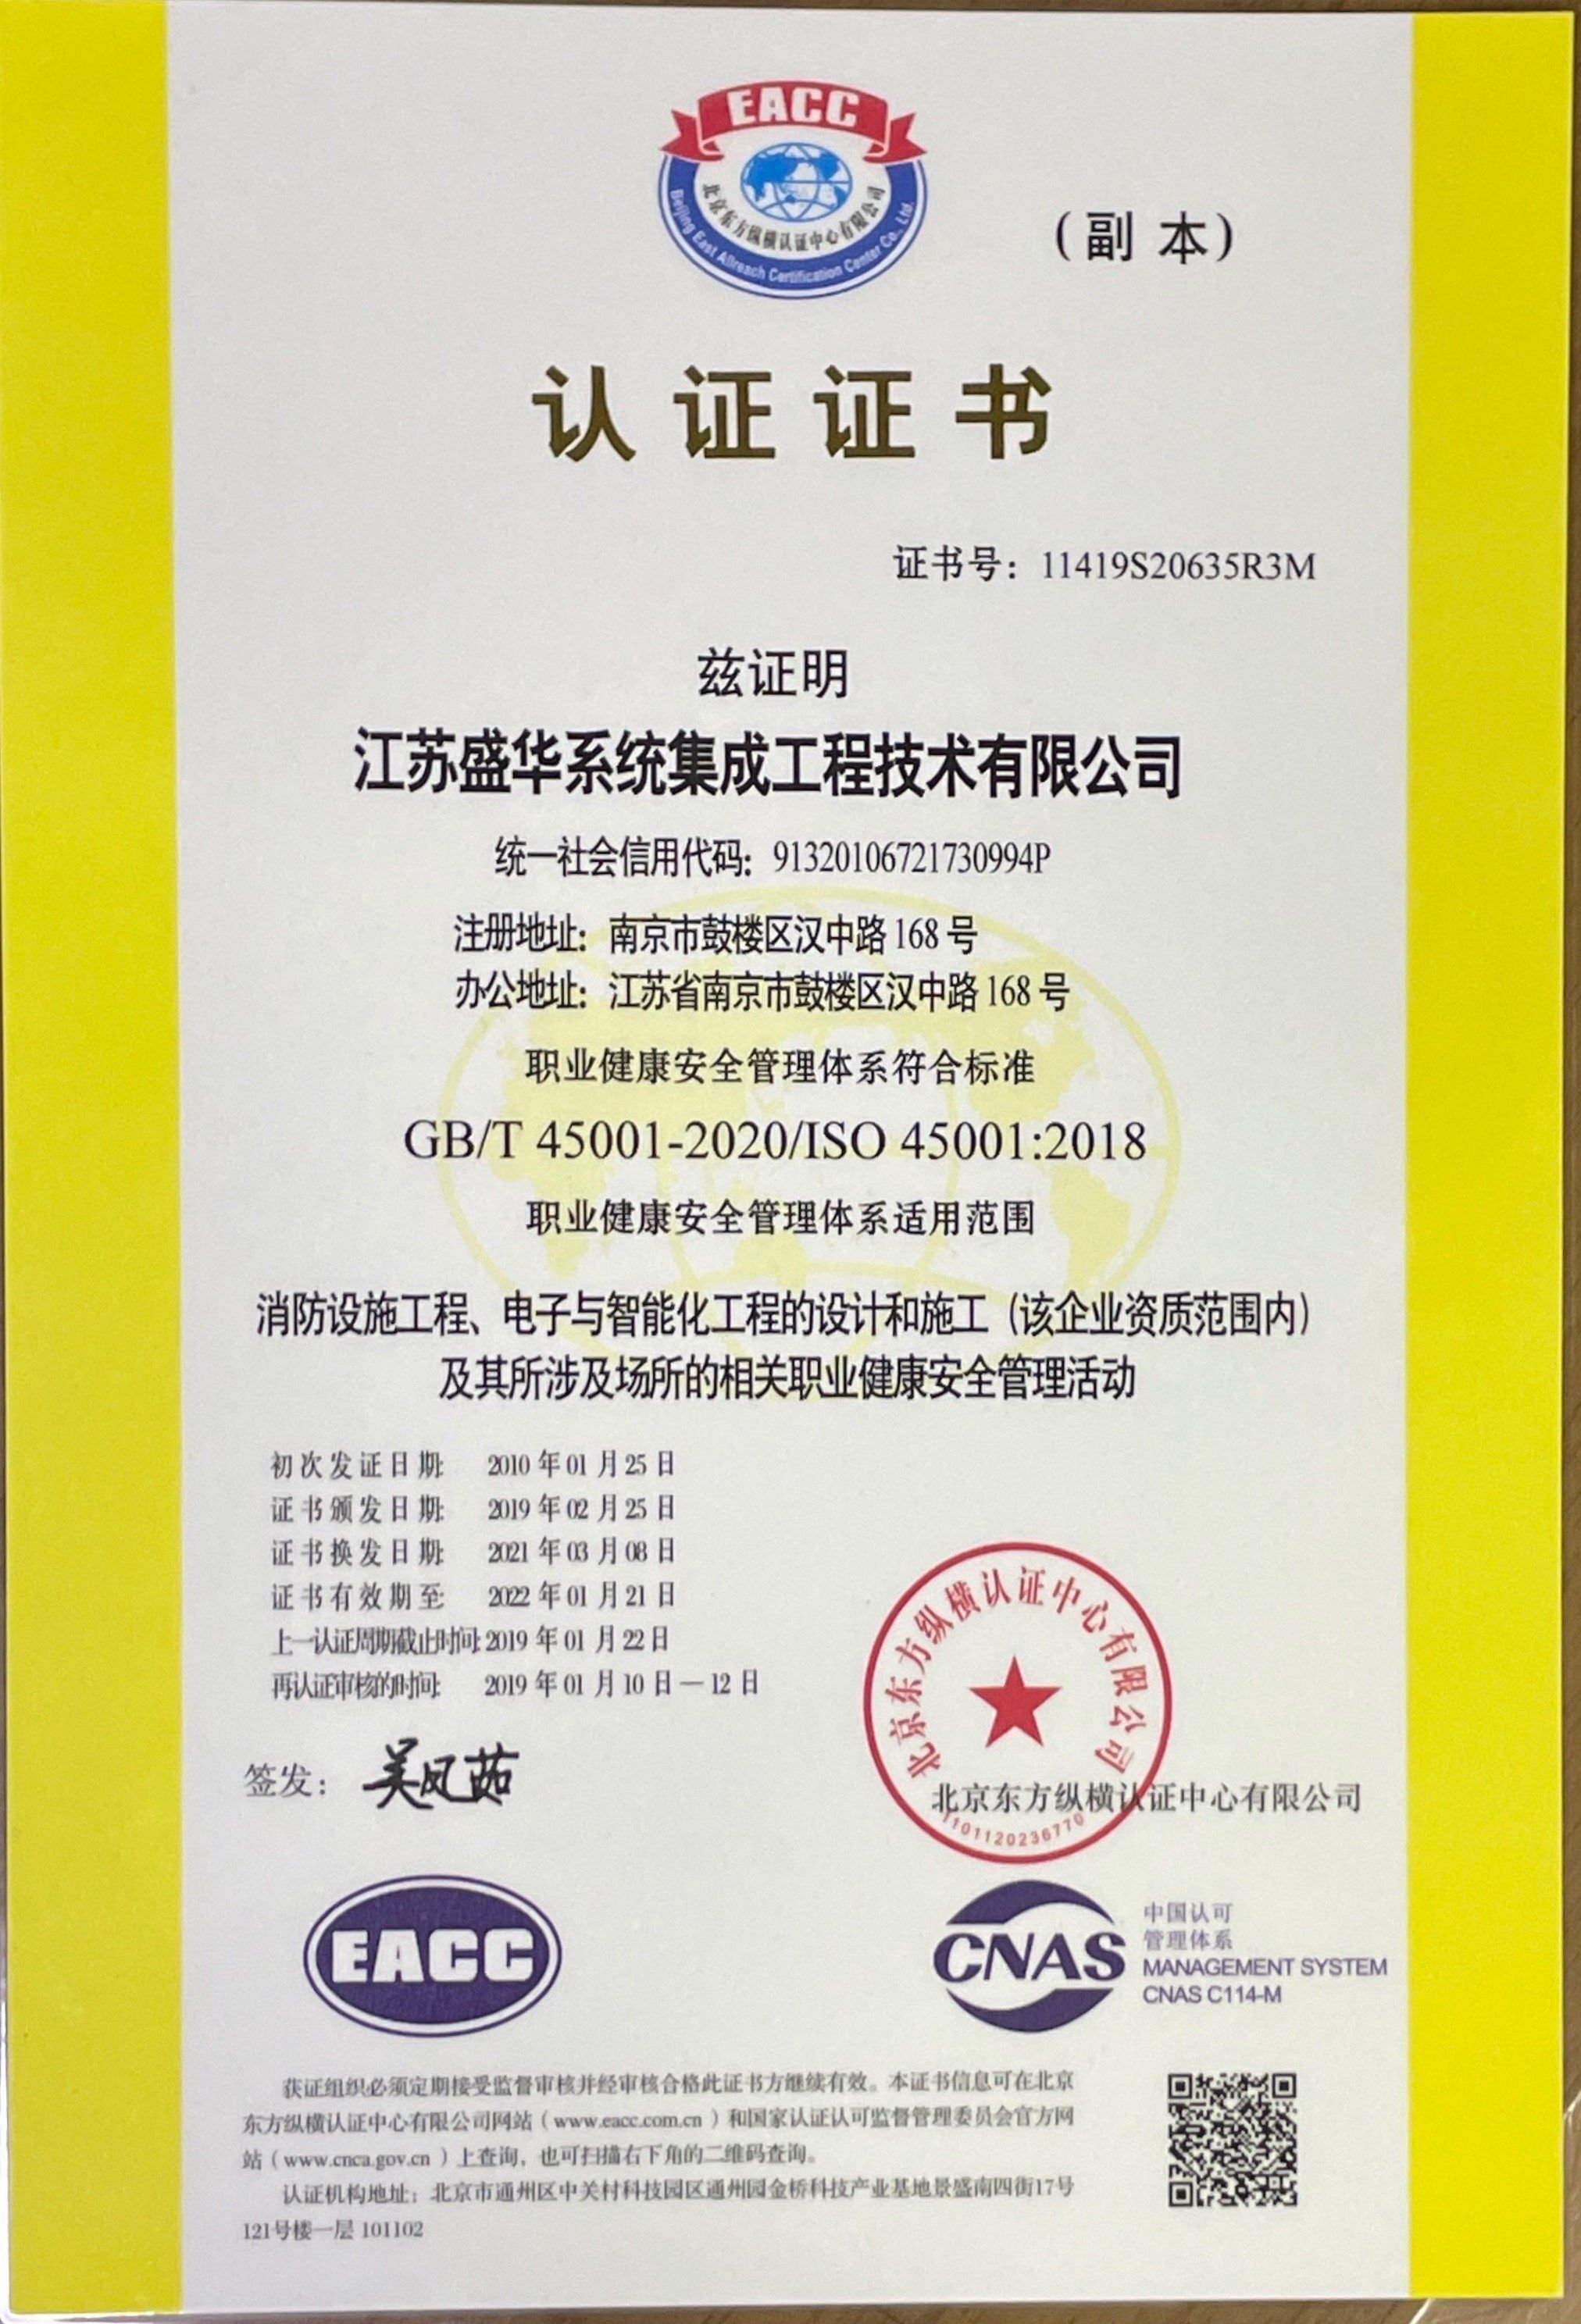 GB/T45001职业健康安全管理体系认证证书